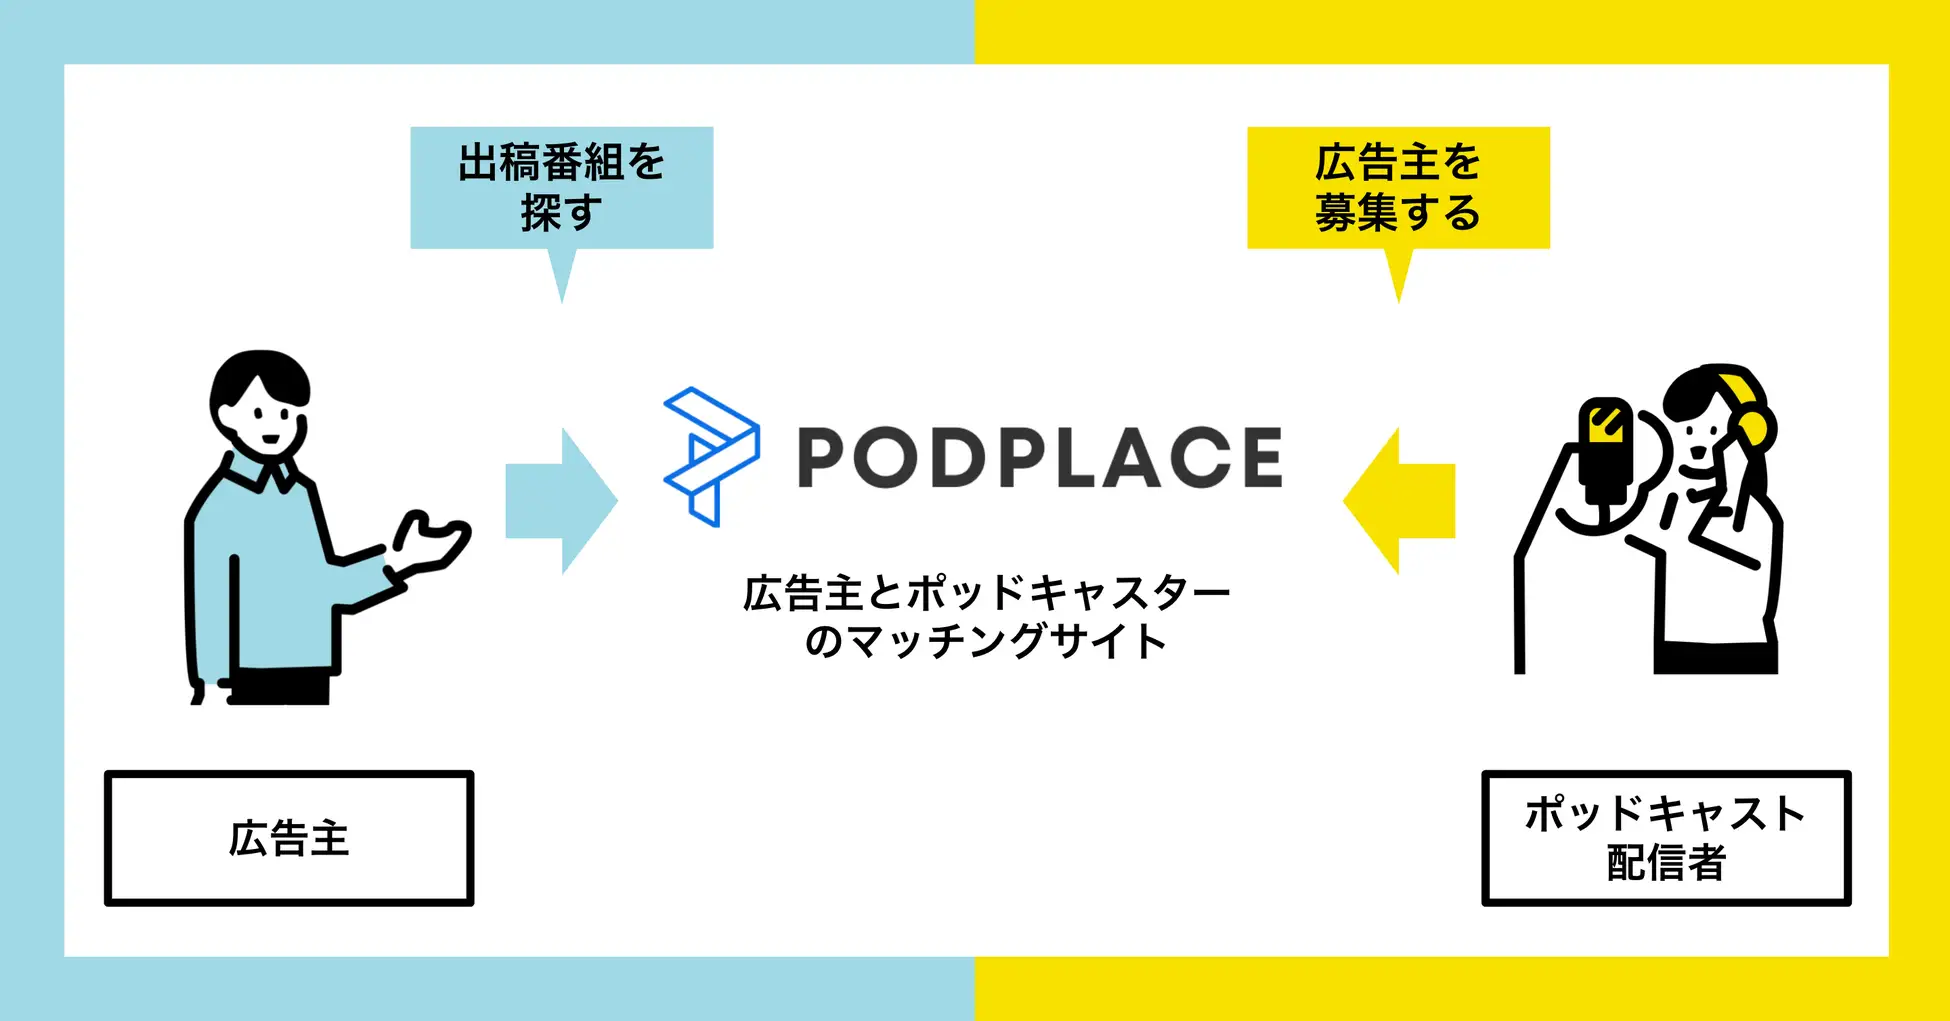 オトナル、ポッドキャスト配信者と広告主のマッチングプラットフォーム「PODPLACE（ポッドプレイス）」を公開